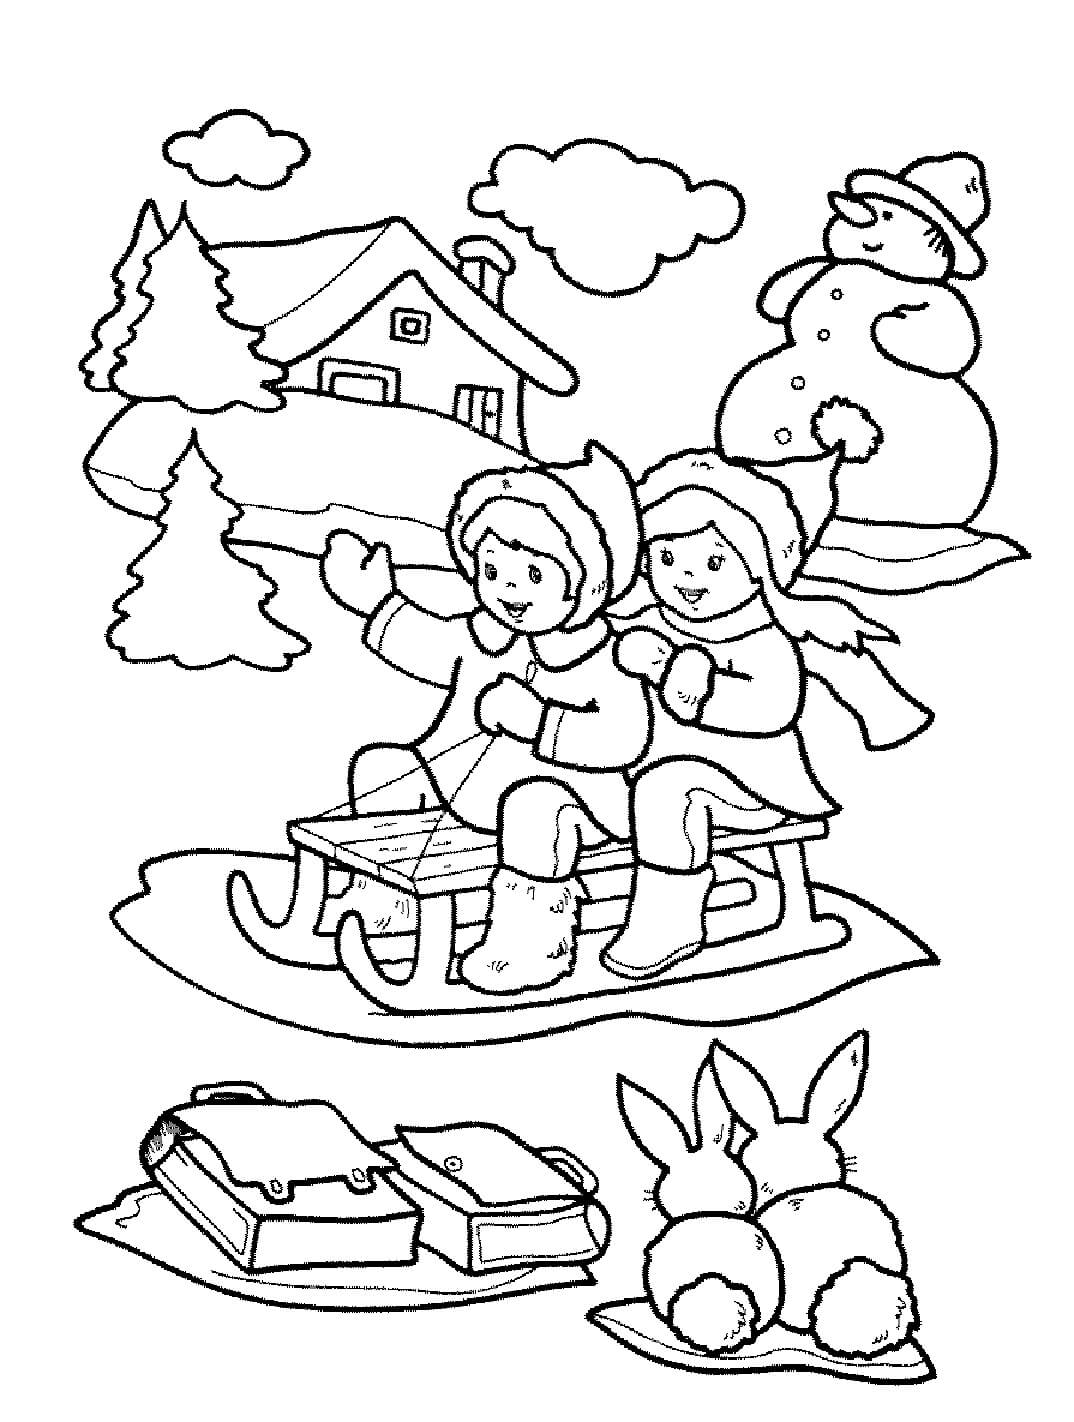 Duas Crianças Em Um Trenó Com Coelhos E Um Boneco De Neve para colorir